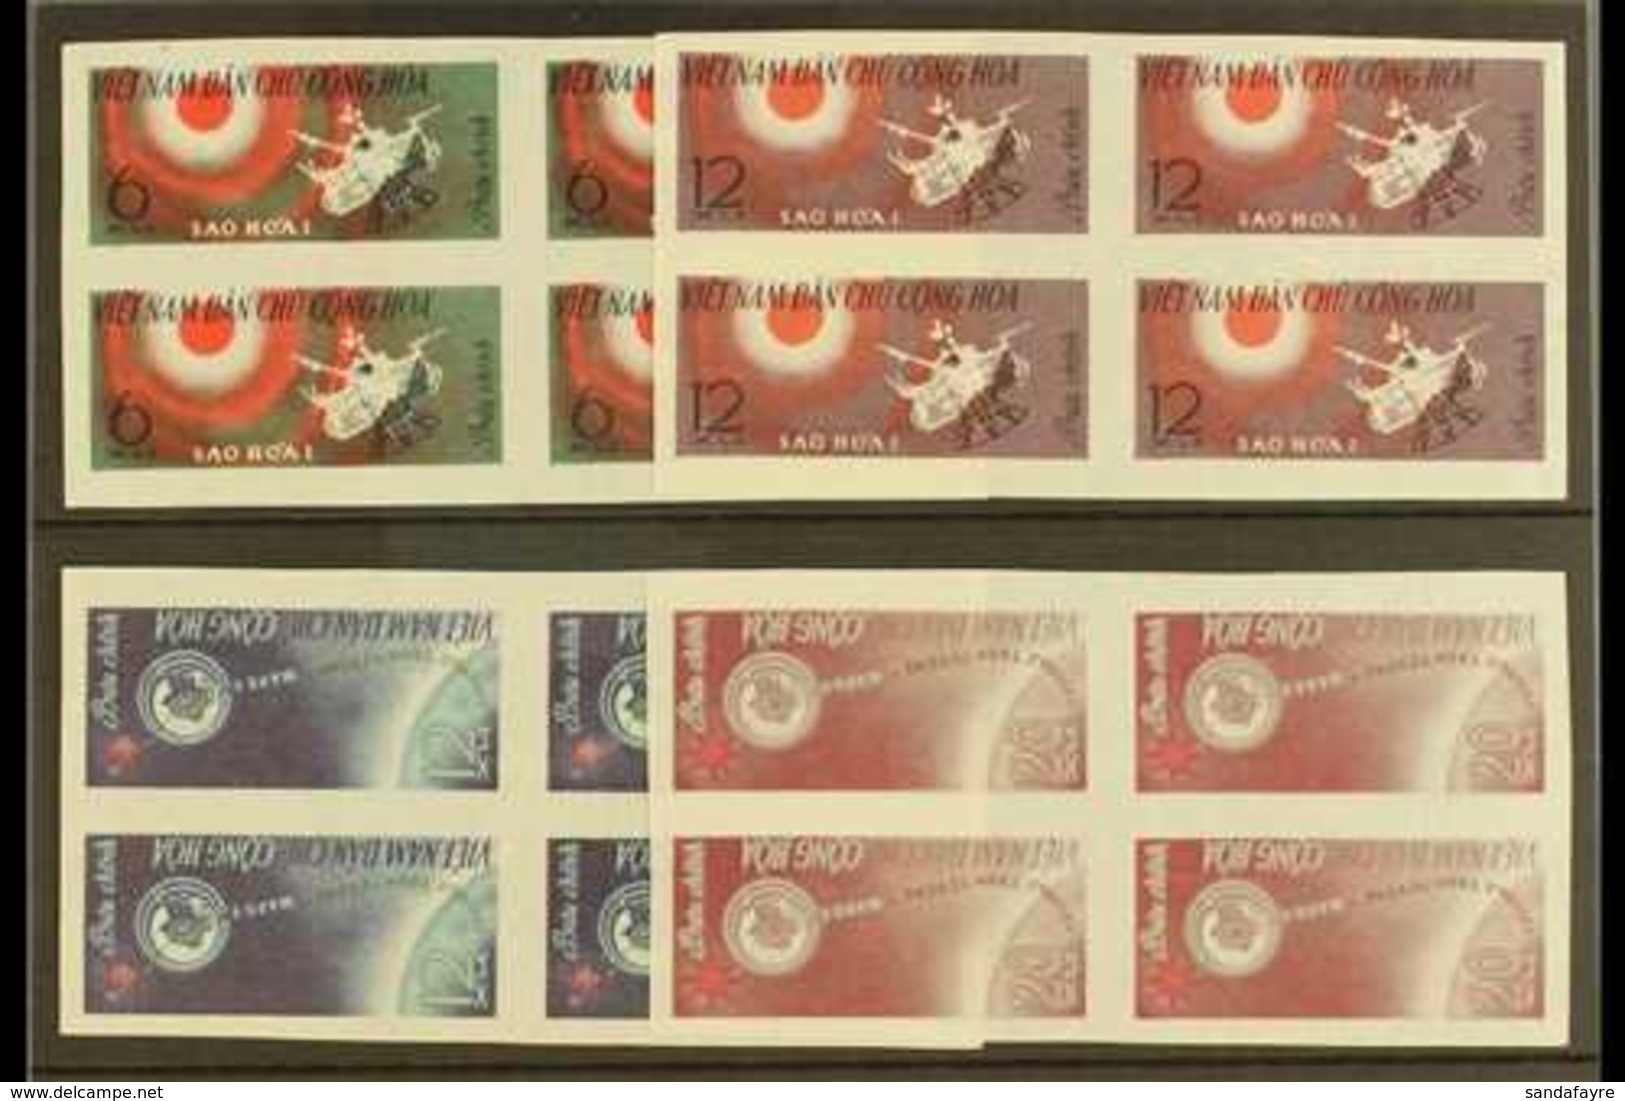 1963 Soviet Rocket "Mars I", SG N260/63, IMPERF SET IN BLOCKS OF 4, Unused & Without Gum (16 Stamps) For More Images, Pl - Vietnam